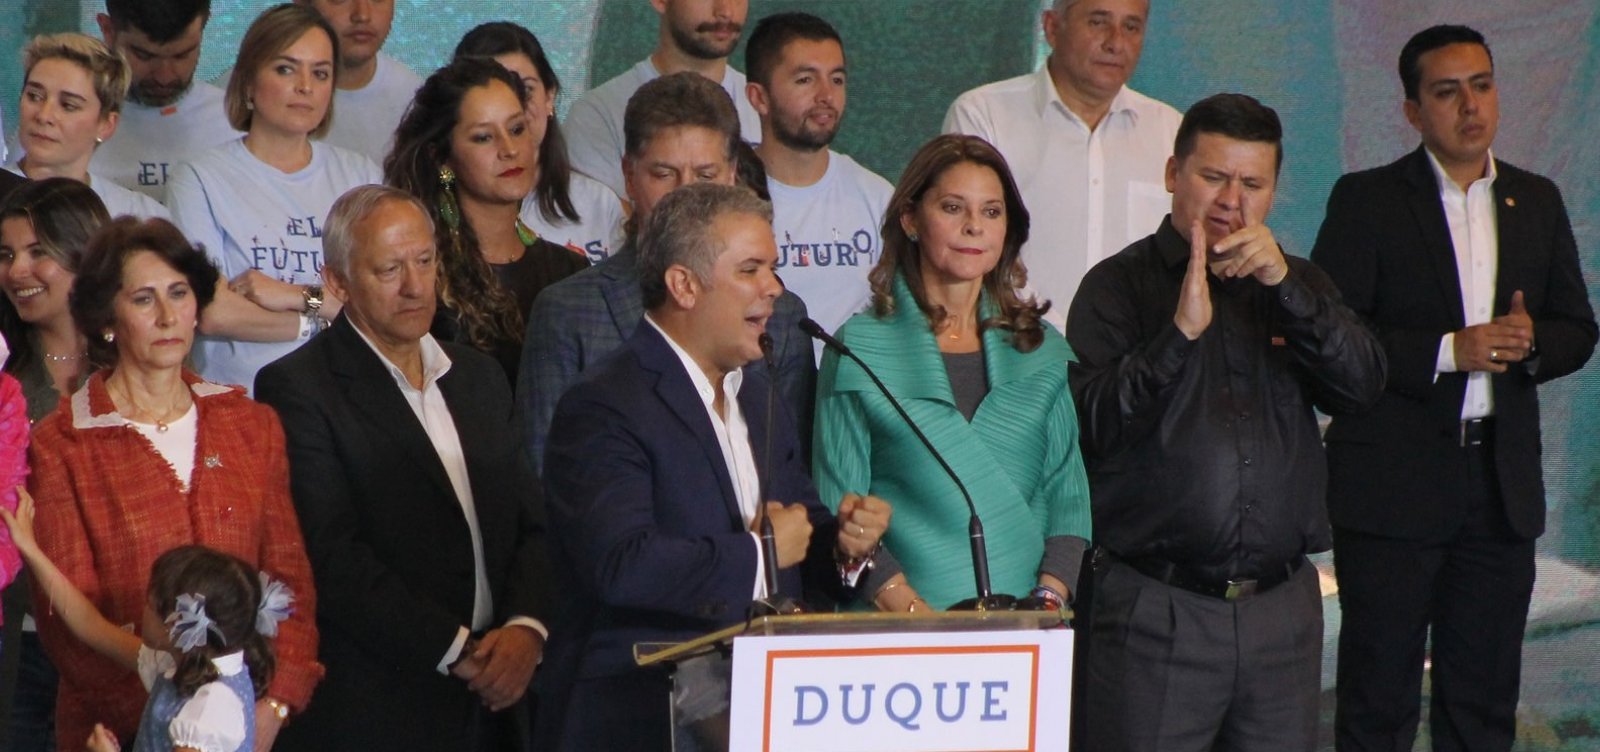 Duque é eleito novo presidente da Colômbia